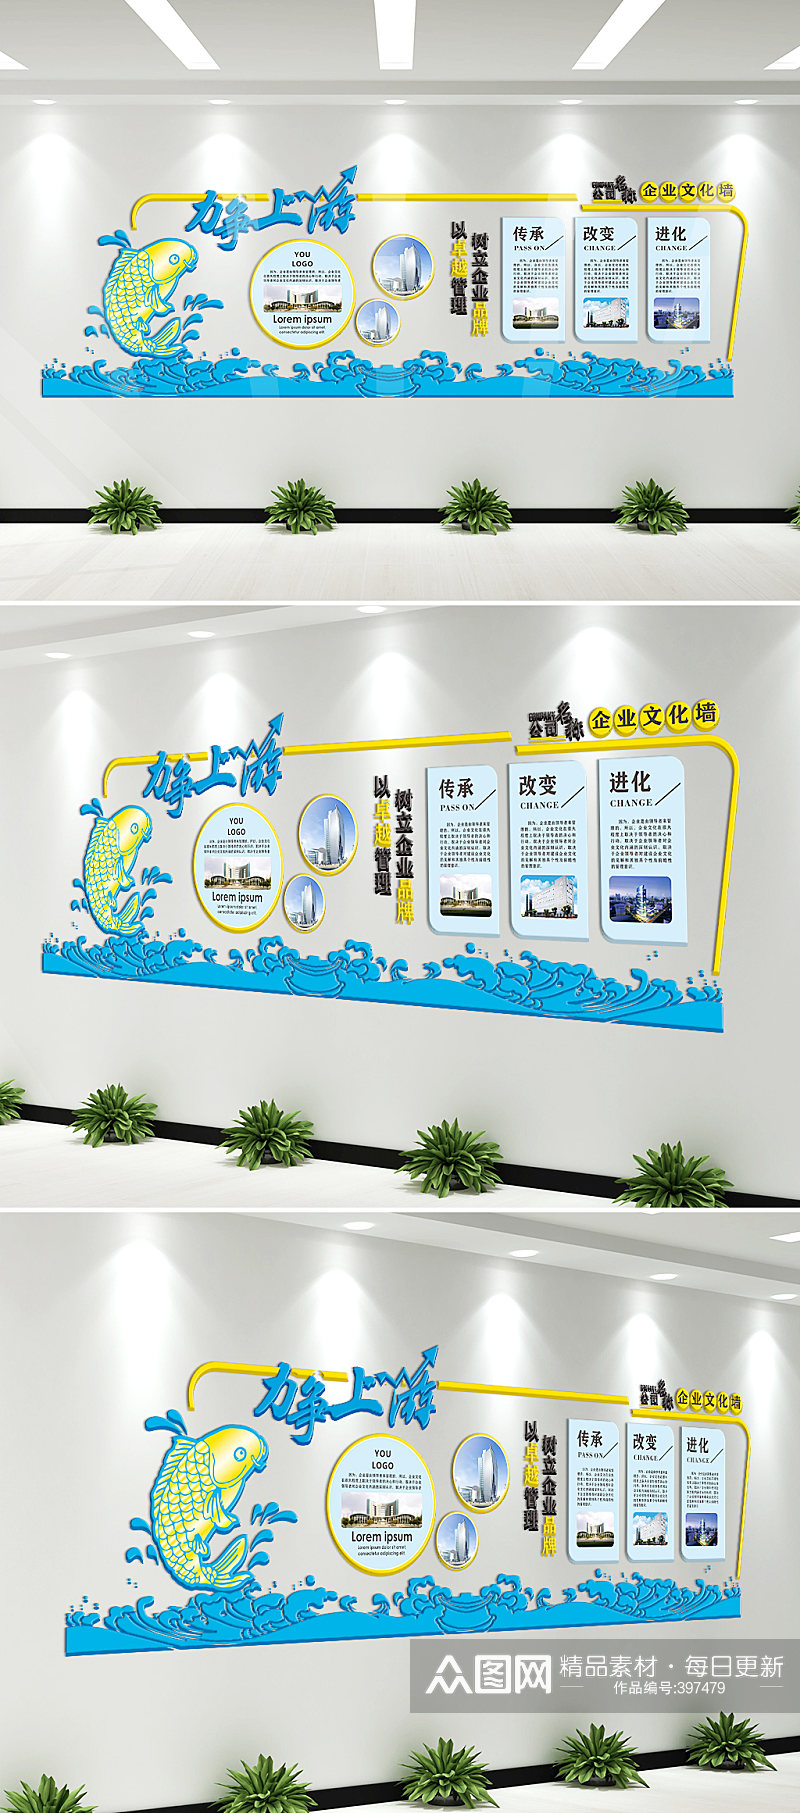 企业微立体3d文化墙长廊设计布置图素材